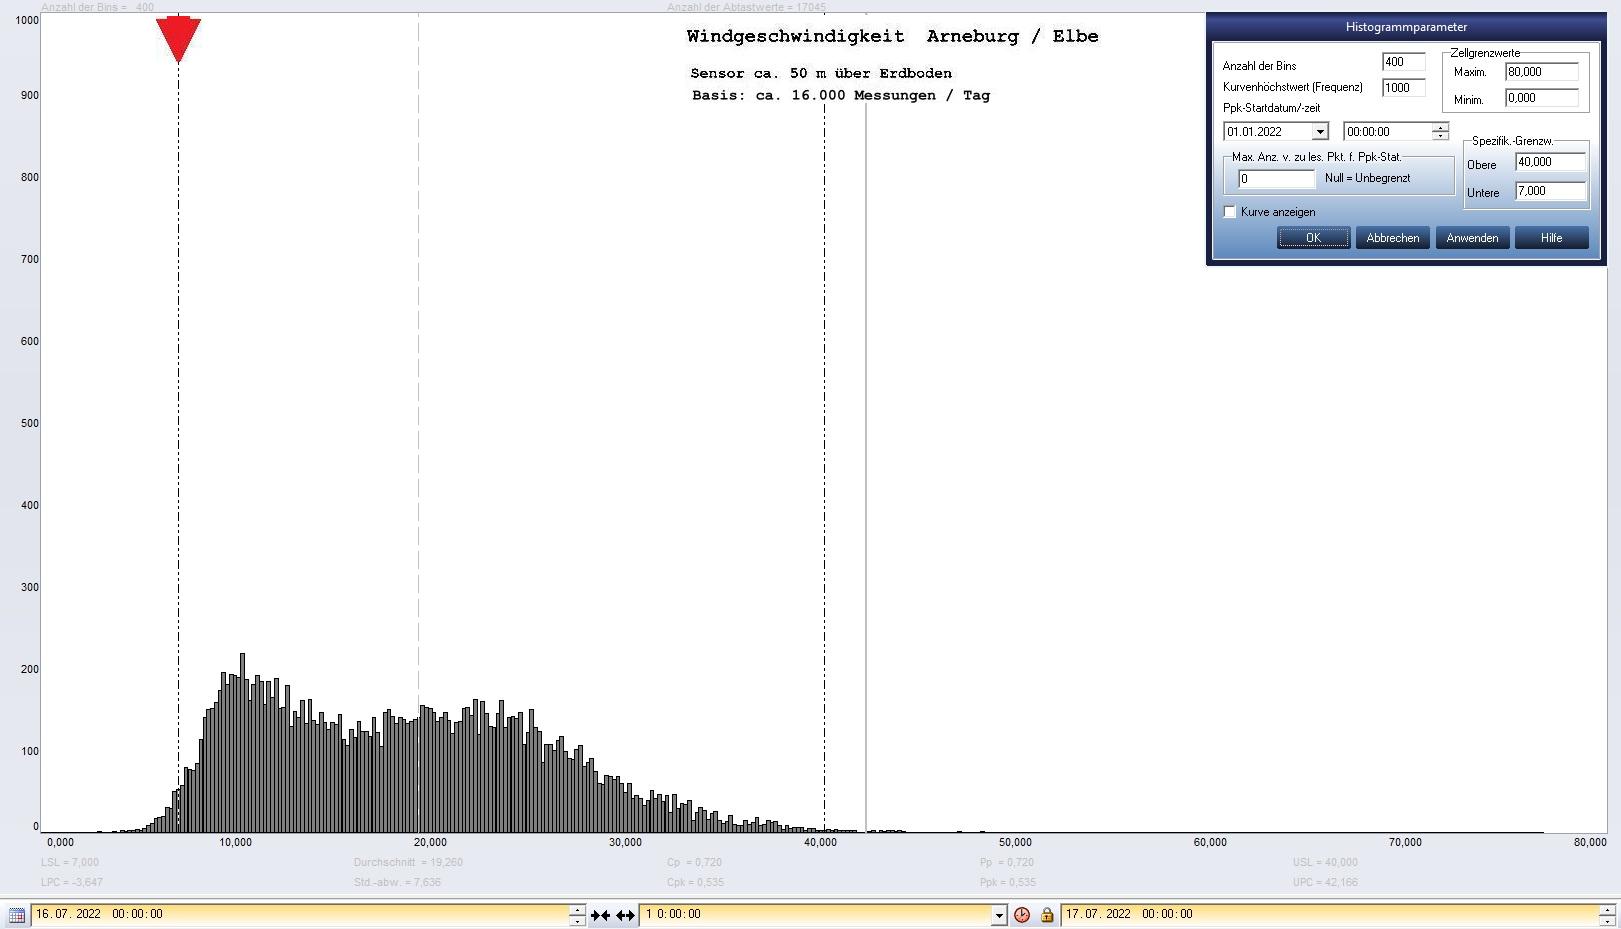 Arneburg Tages-Histogramm Winddaten, 16.07.2022
  Histogramm, Sensor auf Gebude, ca. 50 m ber Erdboden, Basis: 5s-Aufzeichnung